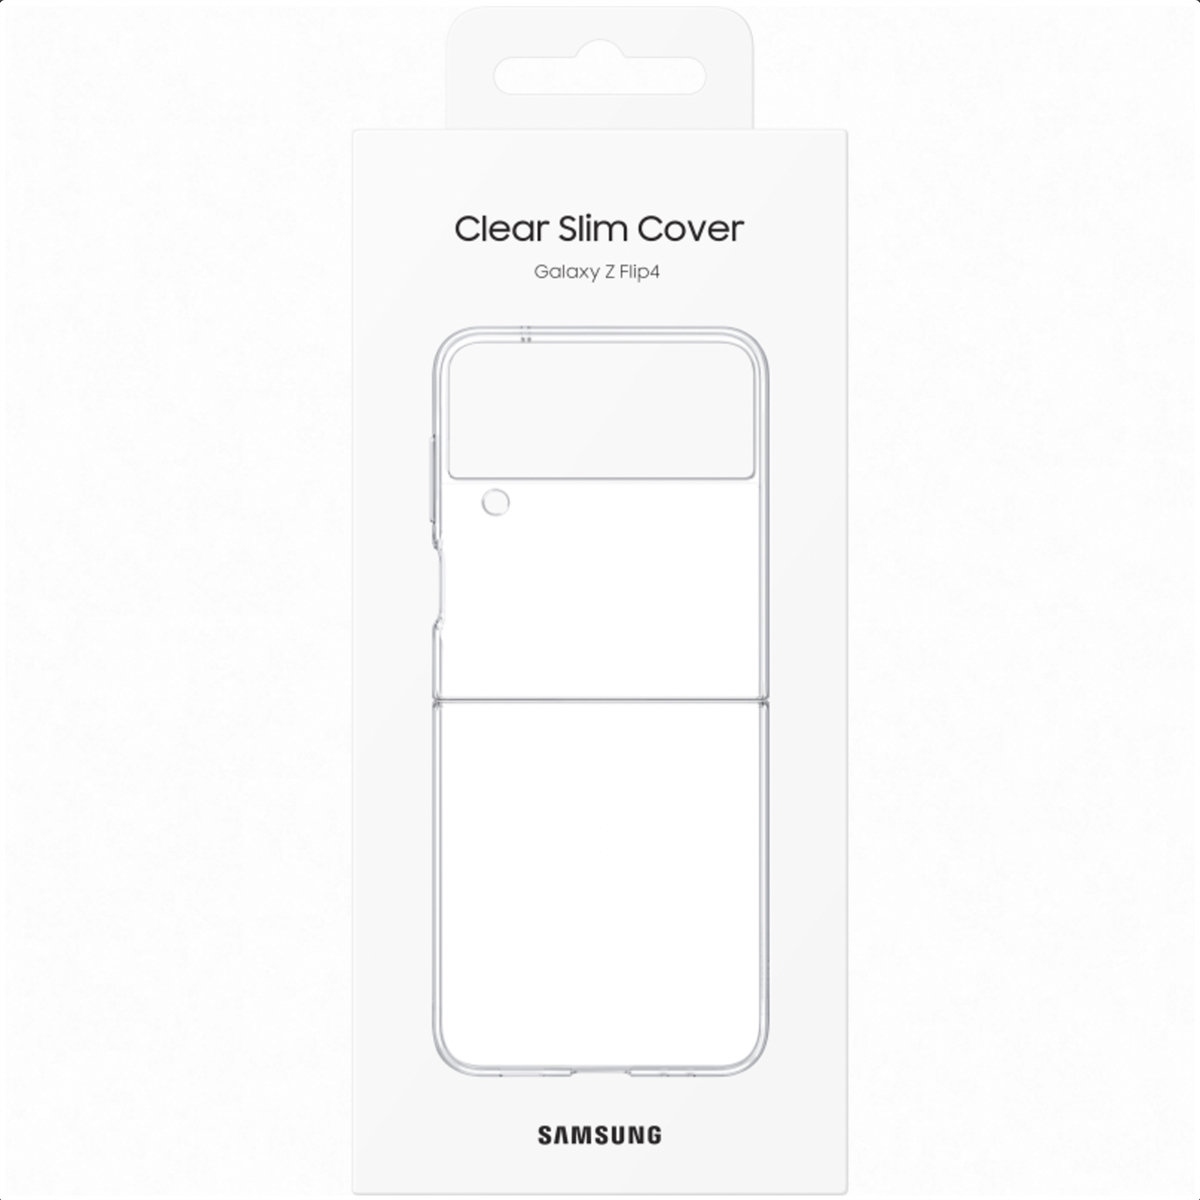 Samsung Clear Slim Cover Etui oryg Galaxy Z Flip 4 Dedykowany model Galaxy Z Flip 4